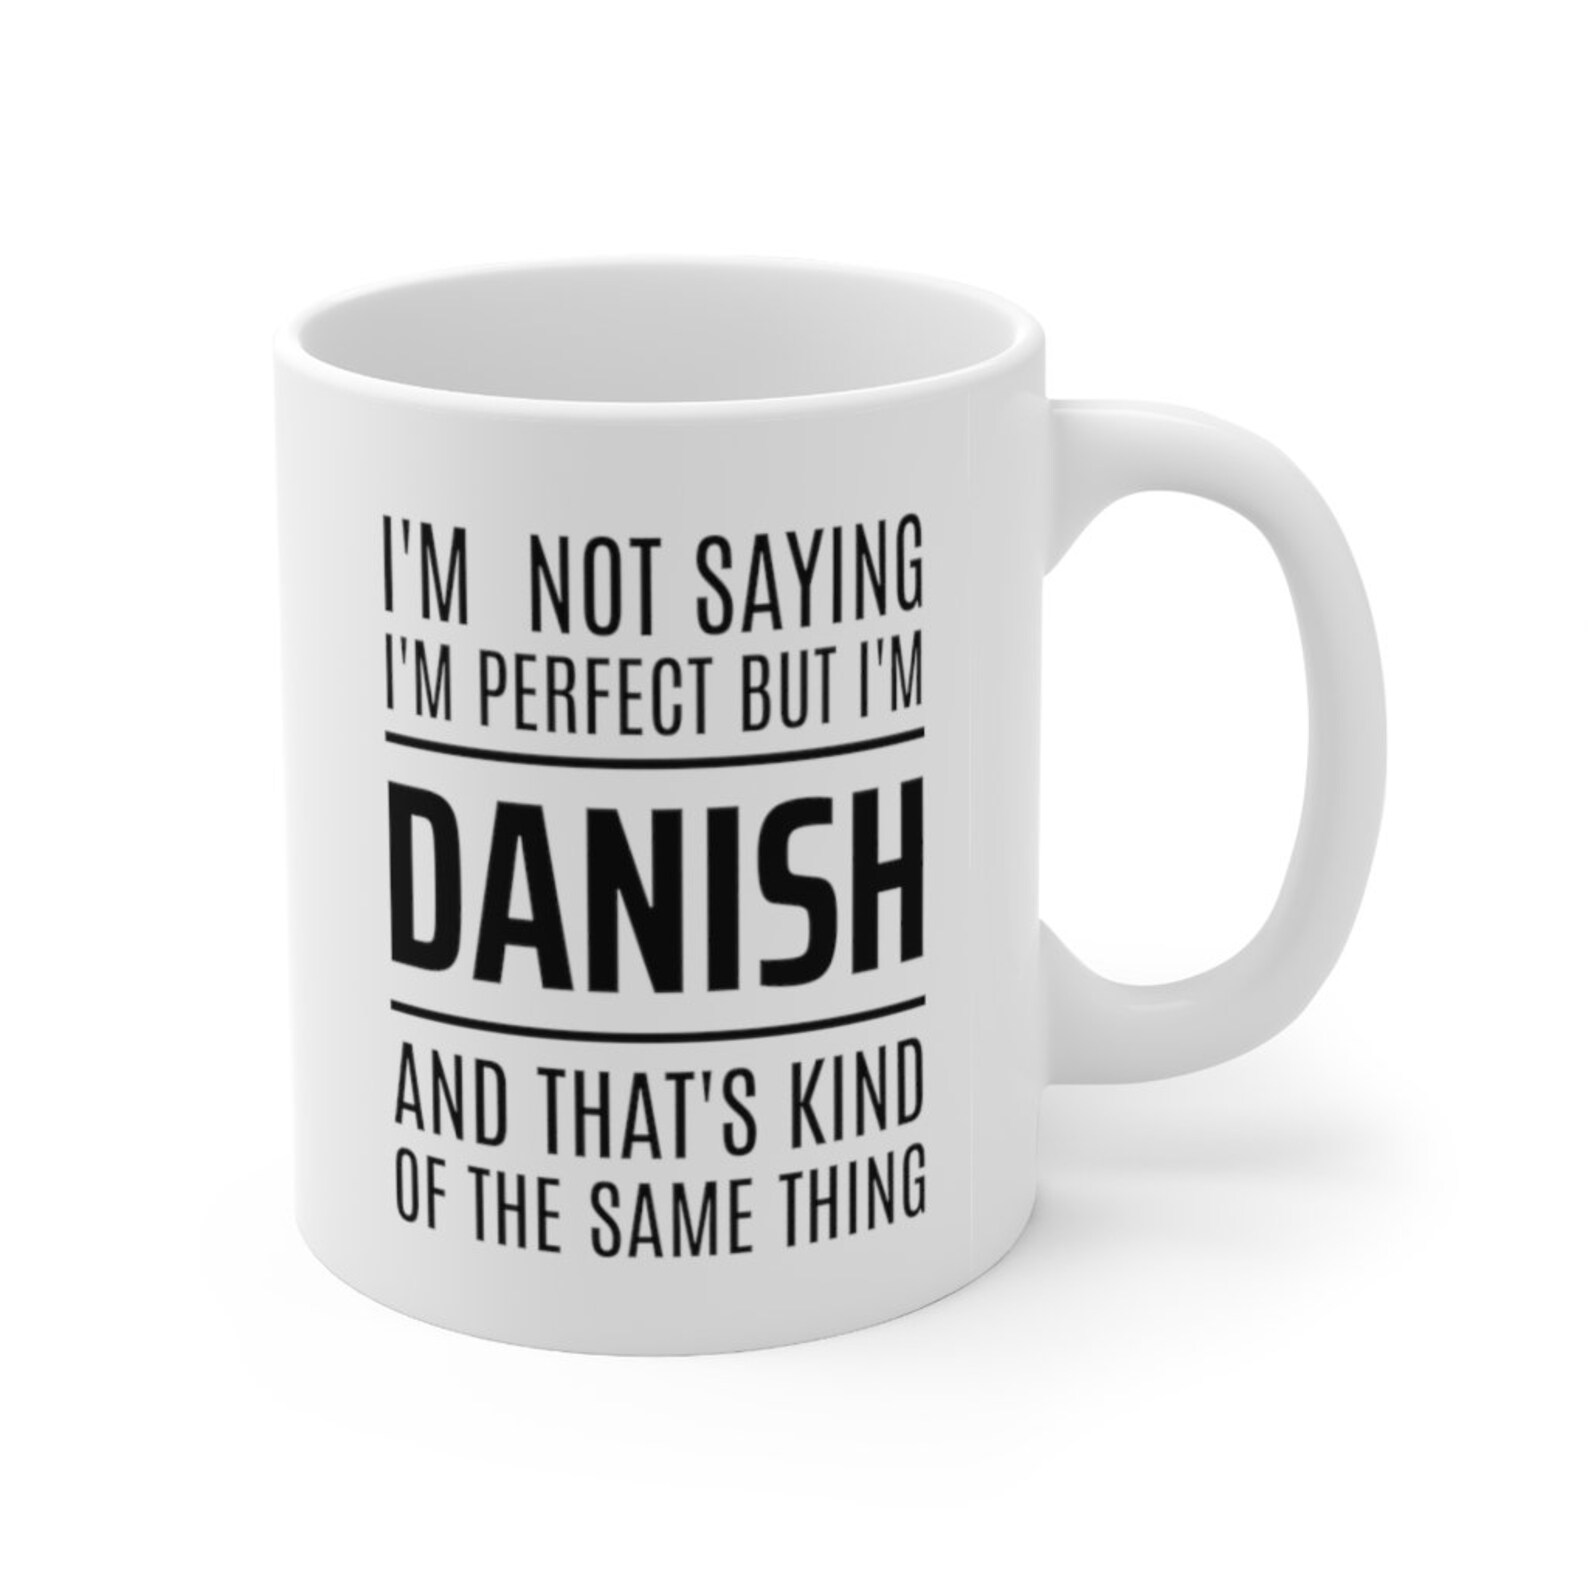 Denmark Gift Ideas Gift For Danish Denmark Mug Danish Gift | Etsy